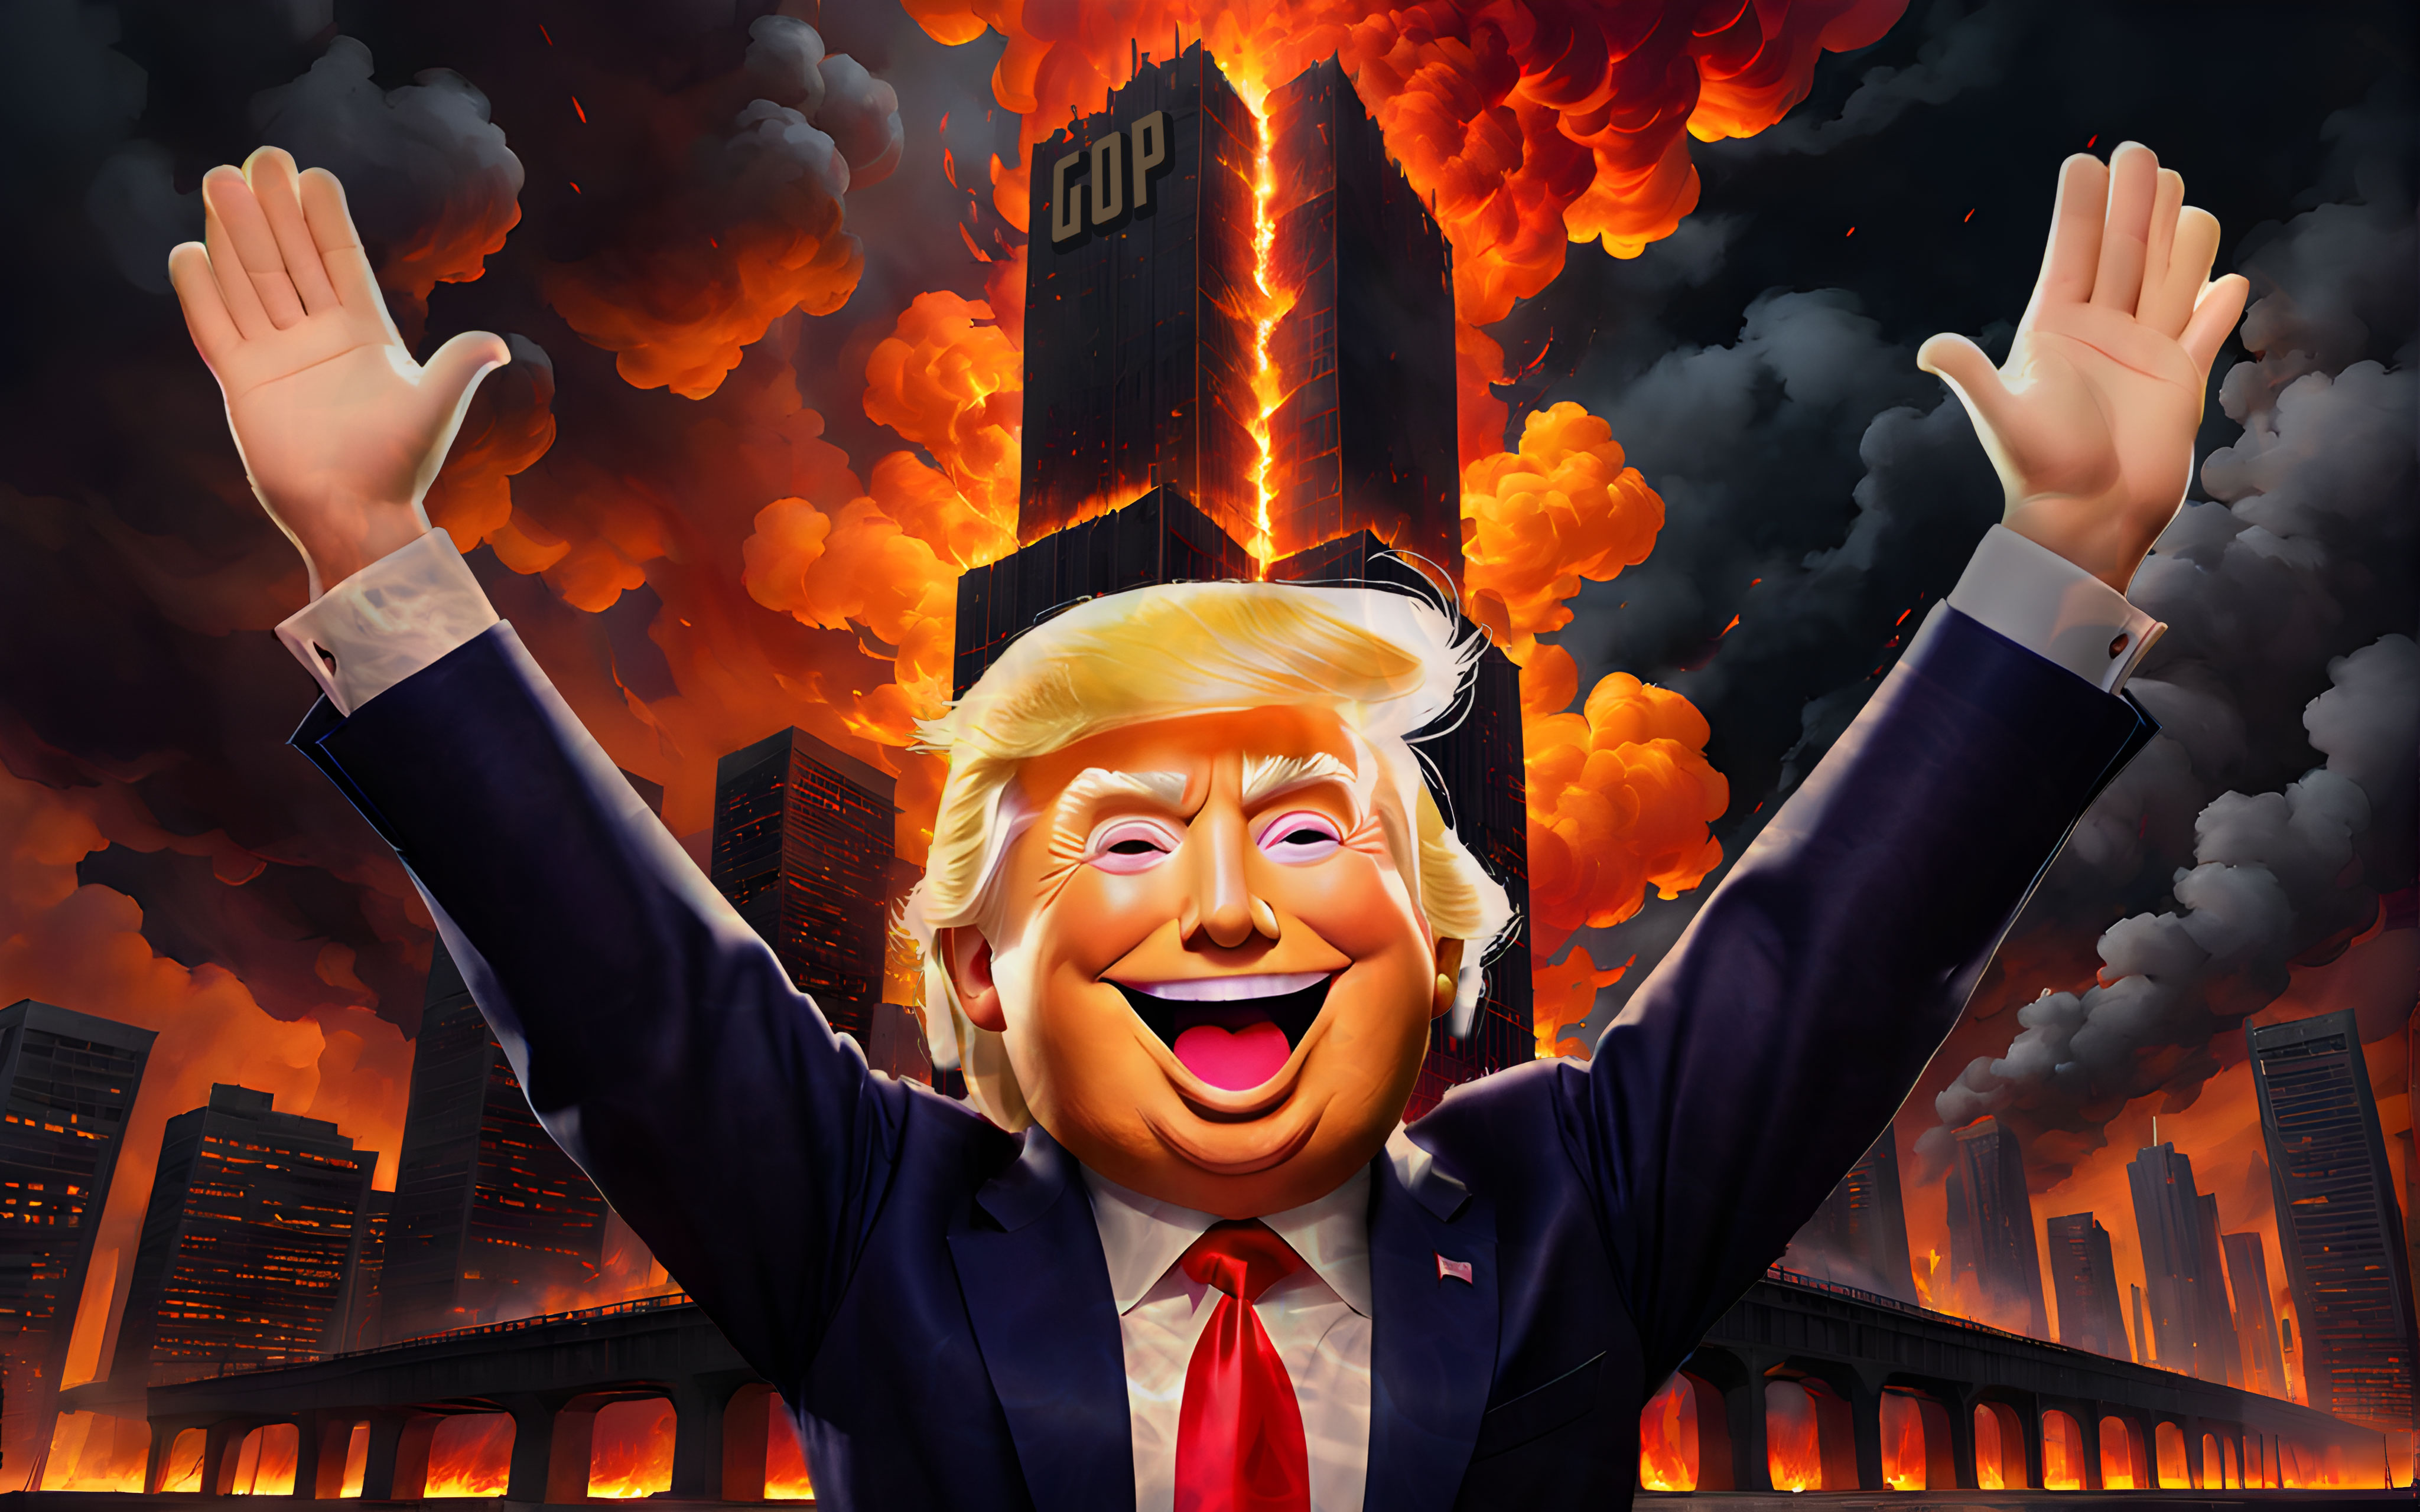 Donald Trump burns down the GOP